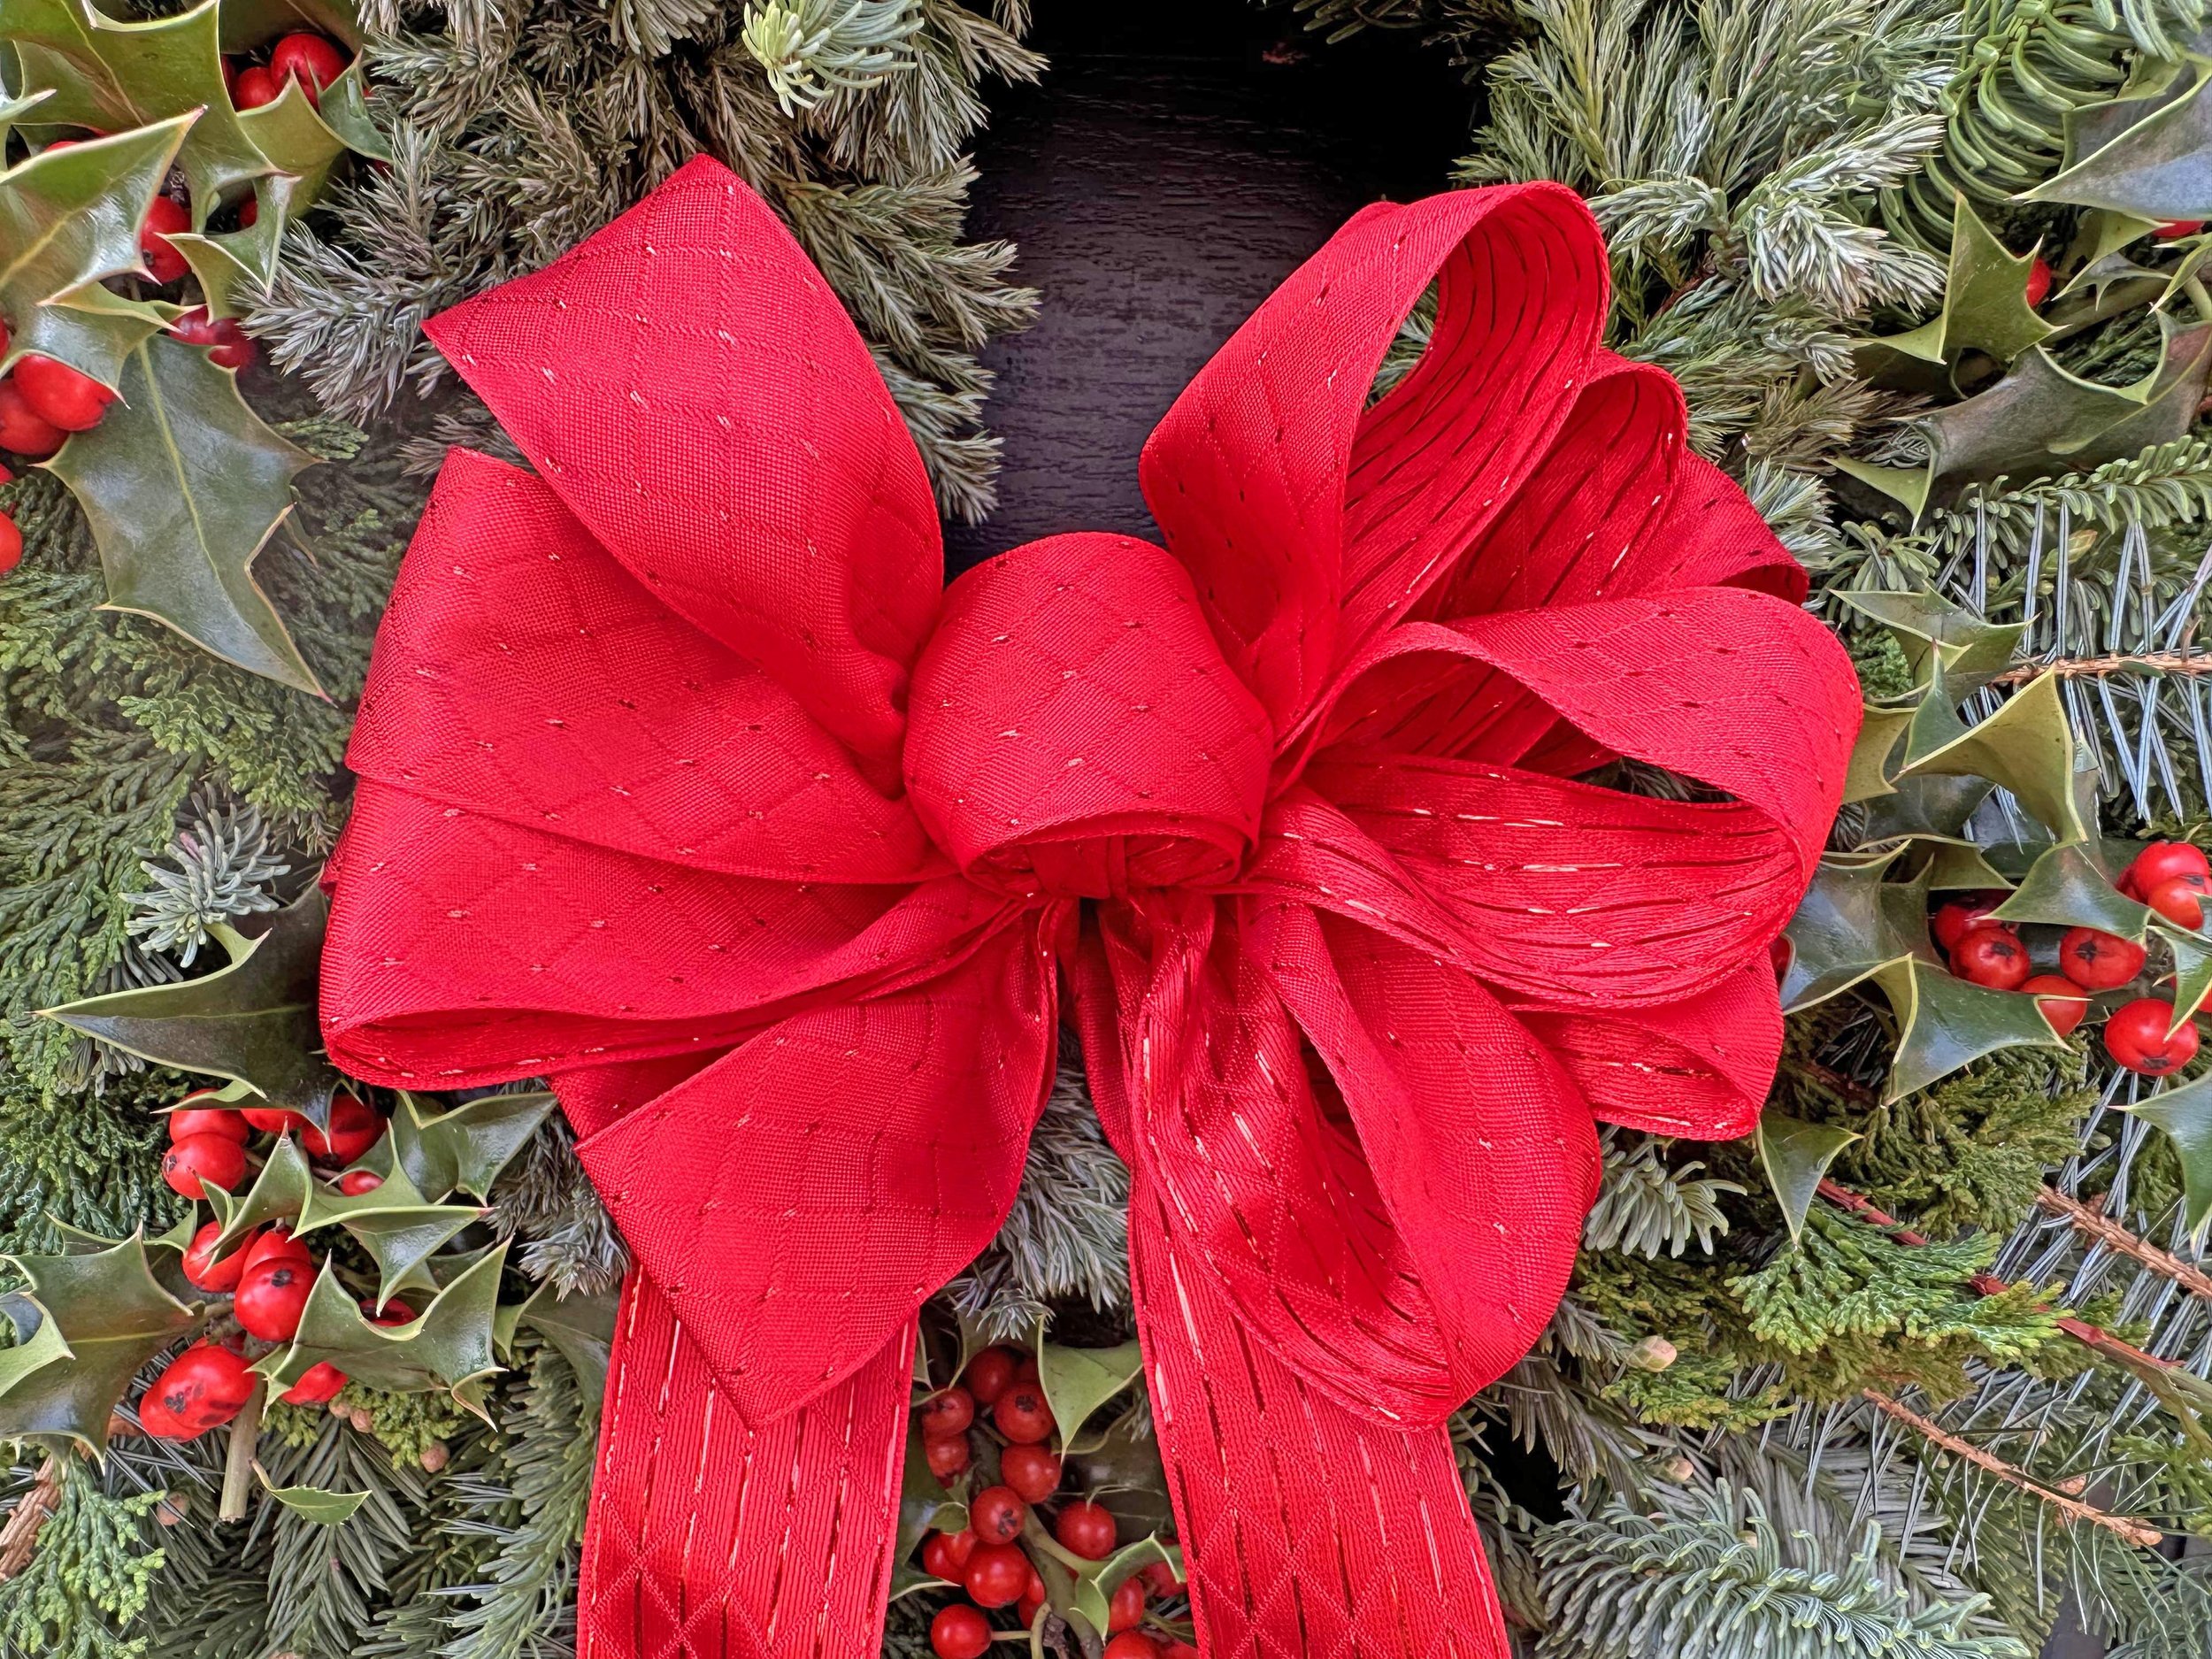 Wreath #1 w:red bow.jpg